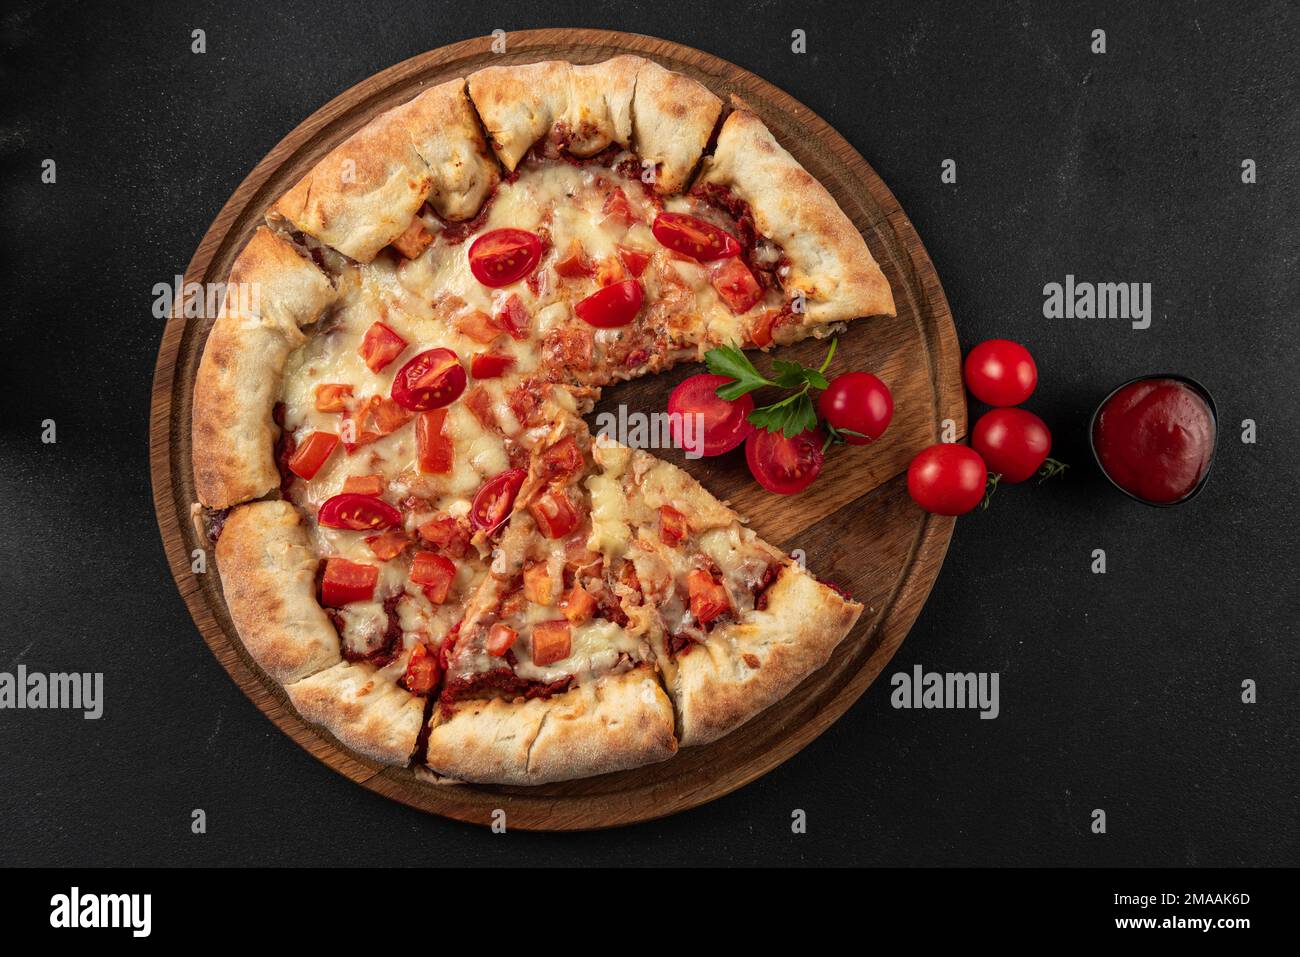 Pizza cuite avec ingrédients à côté de faire sauce tomate, mozzarella, tomates, huile d'olive, fromage, épices, servies sur une table rustique en bois. Forme plate Banque D'Images